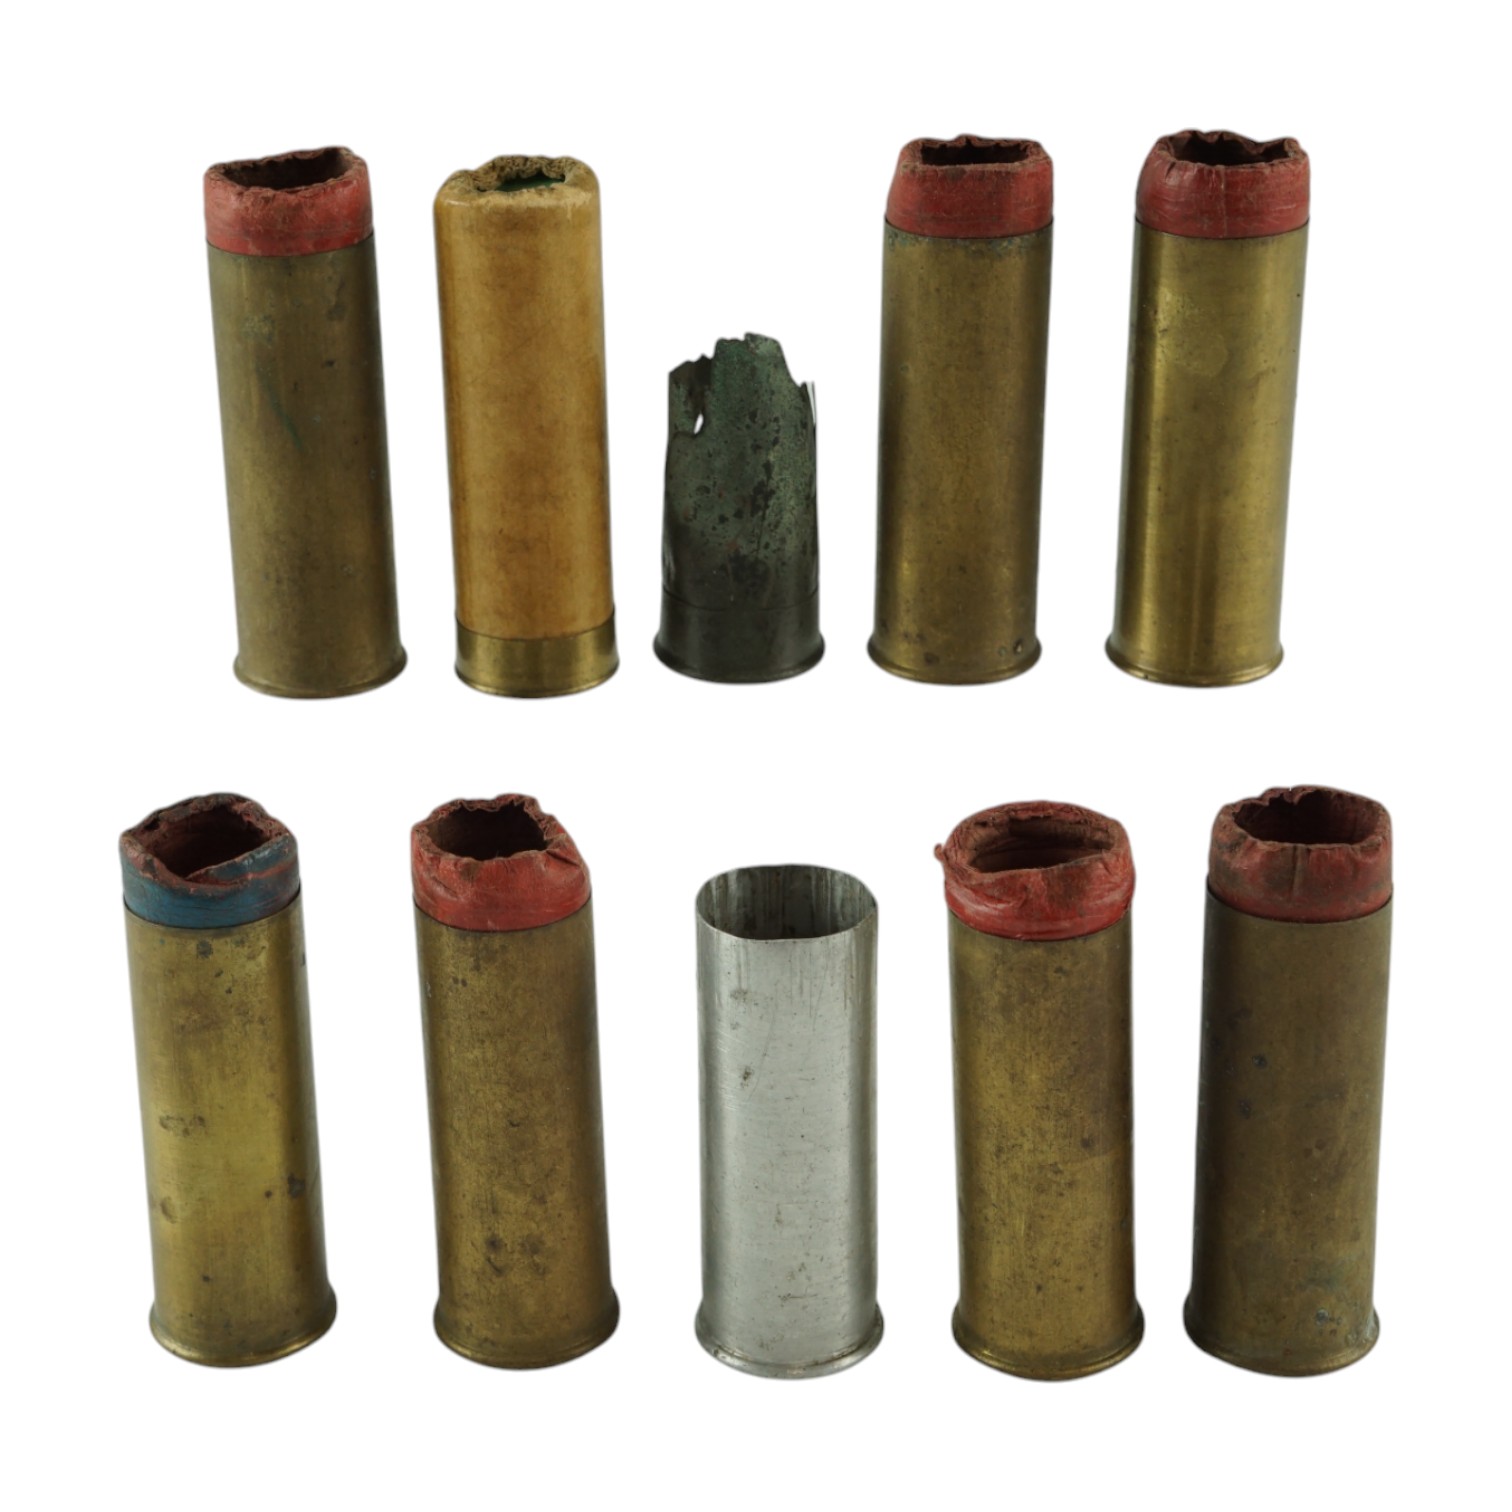 Seven inert Eley-Kynoch brass 12-bore shotgun cartridges, a similar inert (empty) pinfire